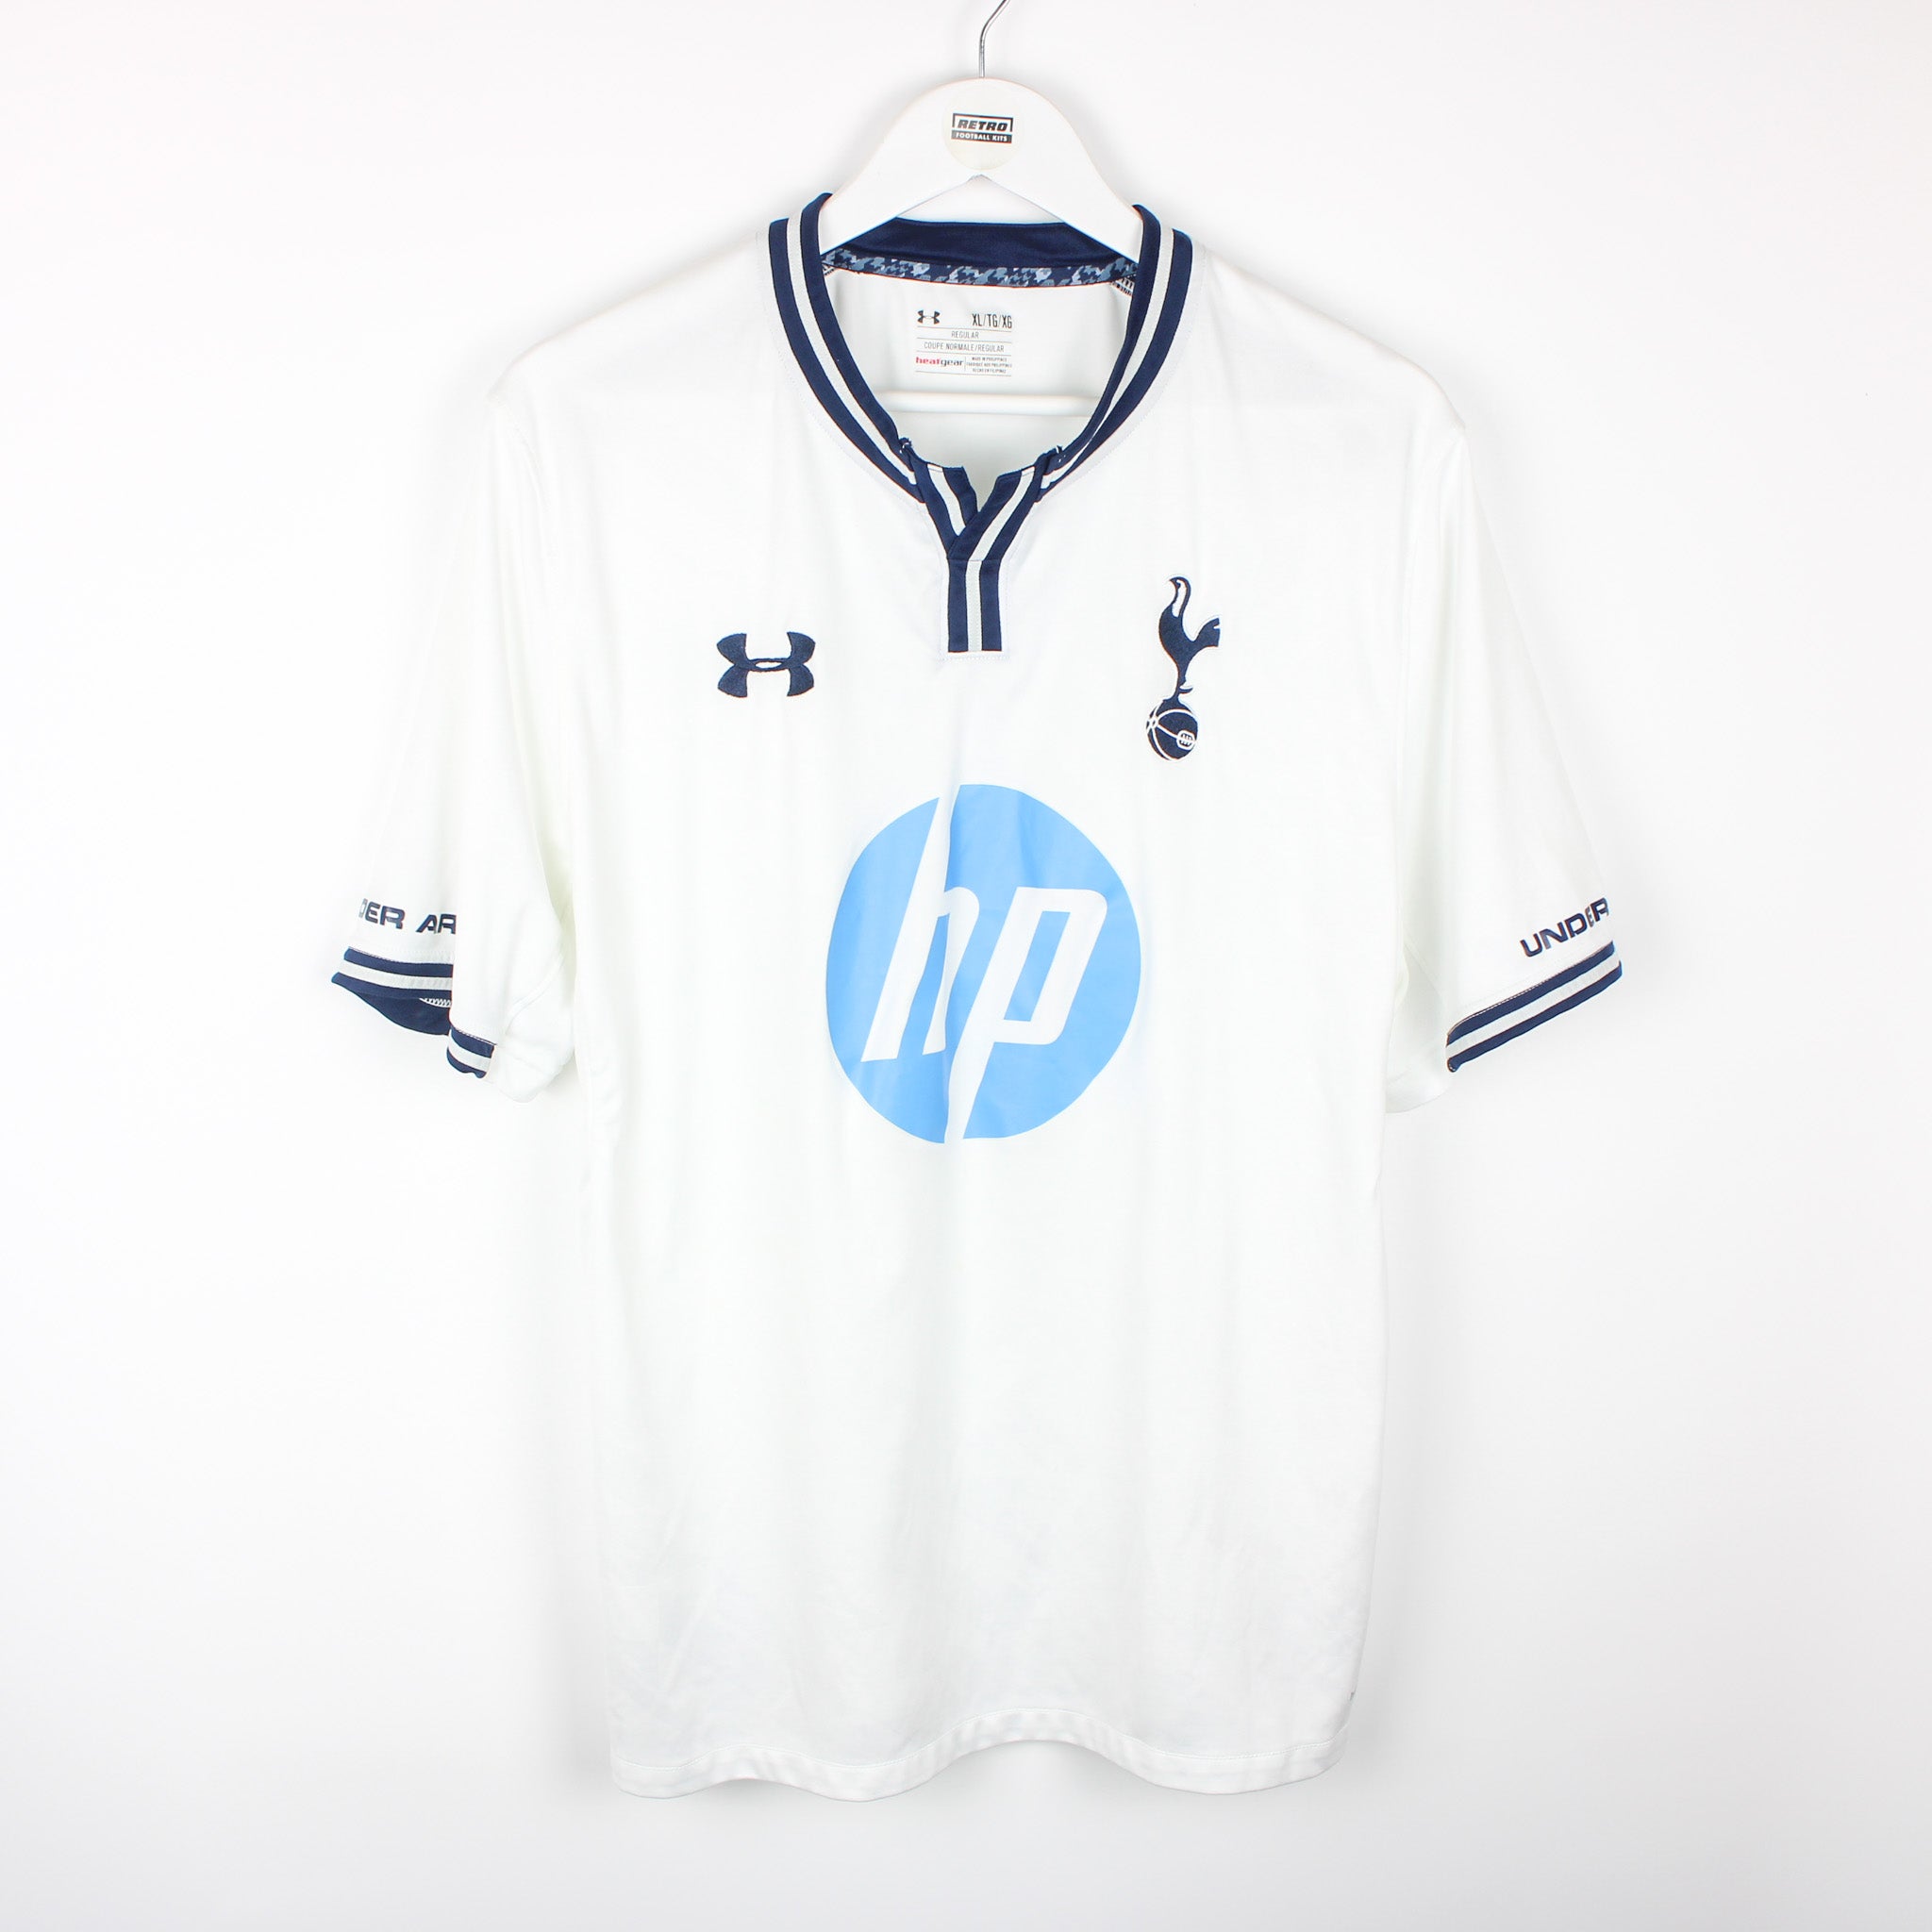 Tottenham Hotspur 13-14 (2013-14) Away  Football shirts, Tottenham,  Tottenham hotspur